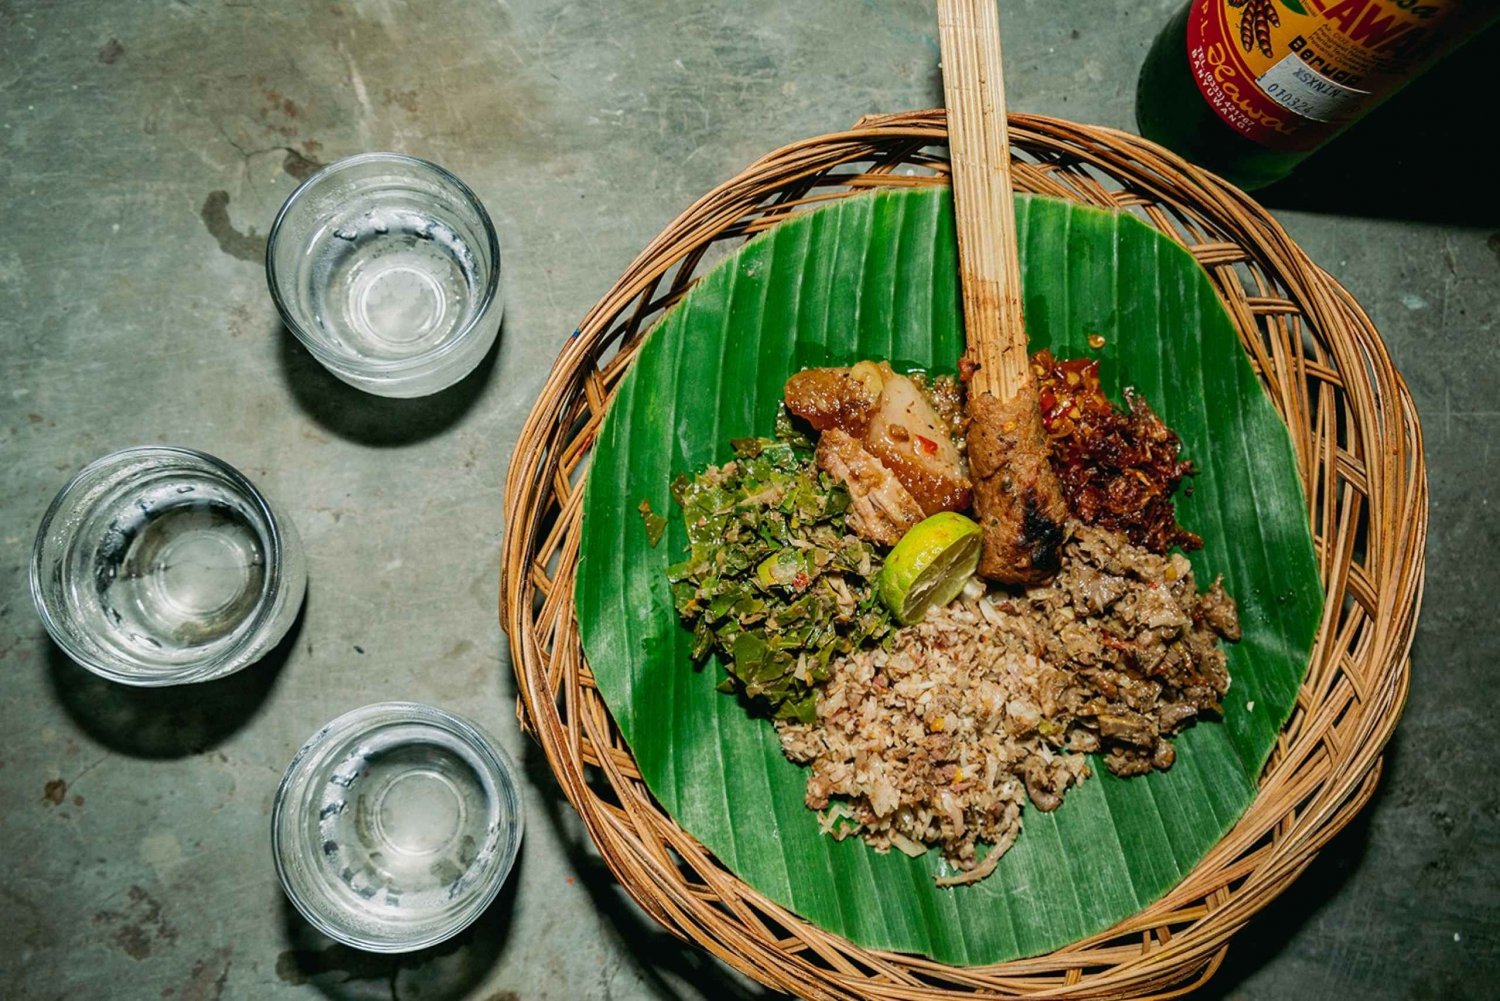 Bali Bites Food Tour com mais de 15 degustações